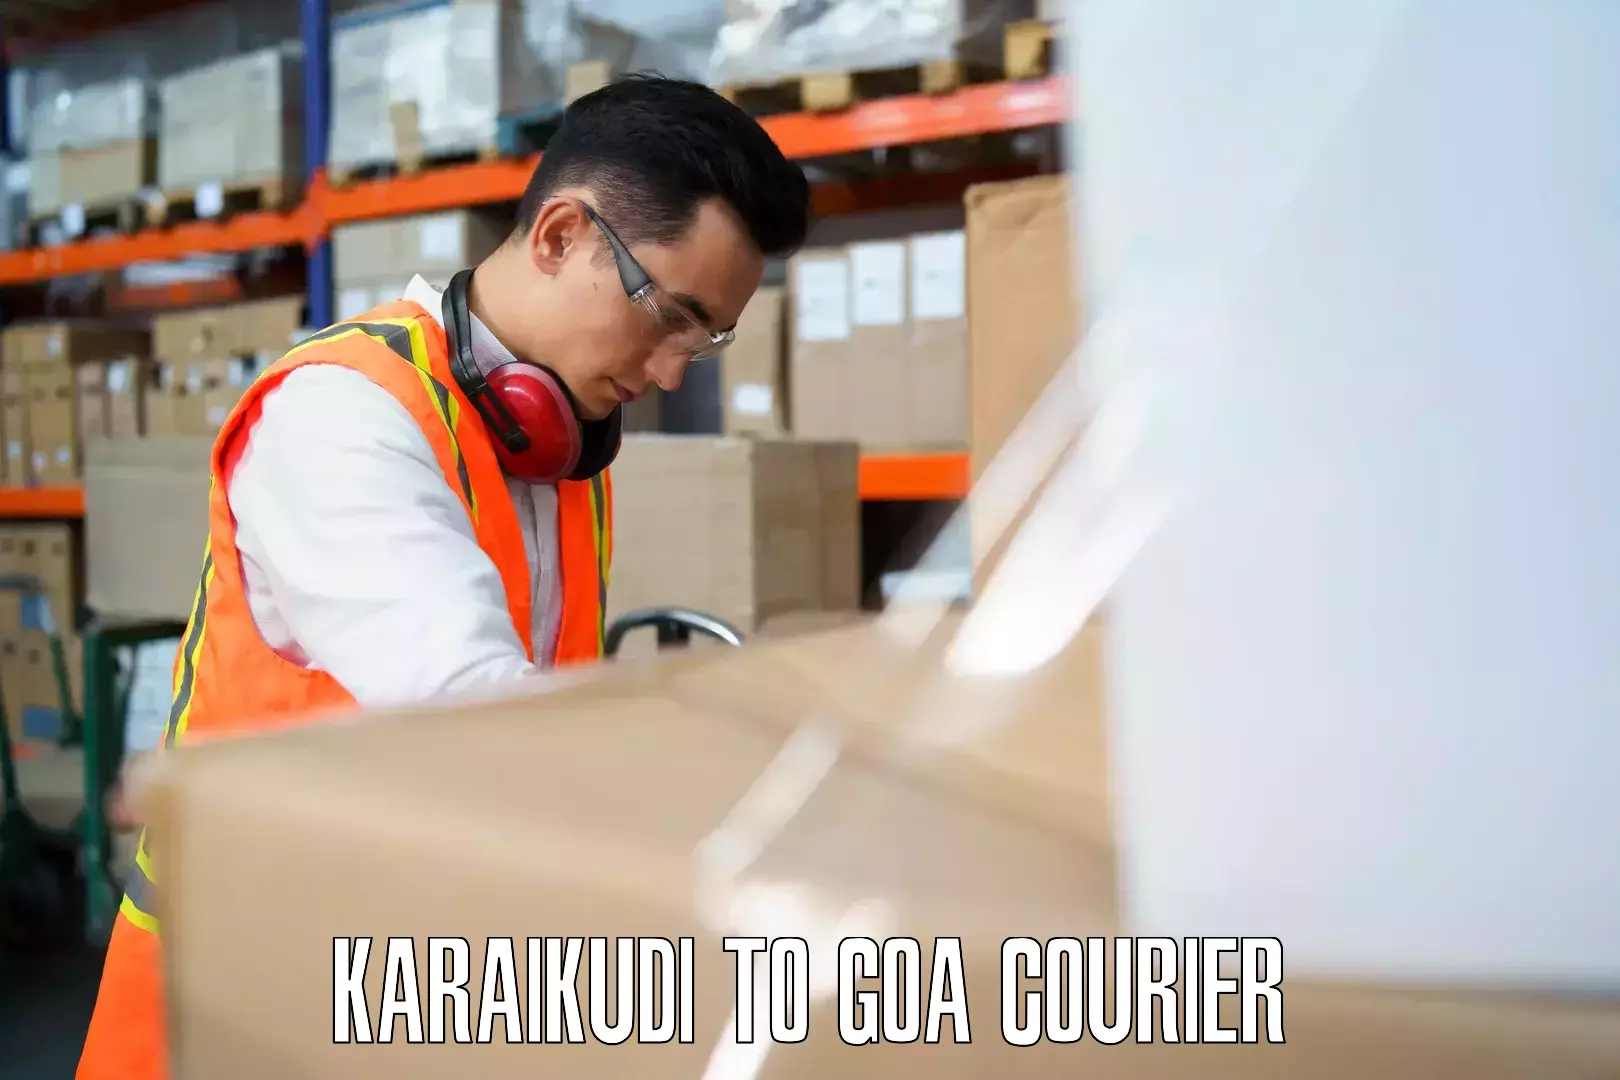 Digital baggage courier Karaikudi to IIT Goa